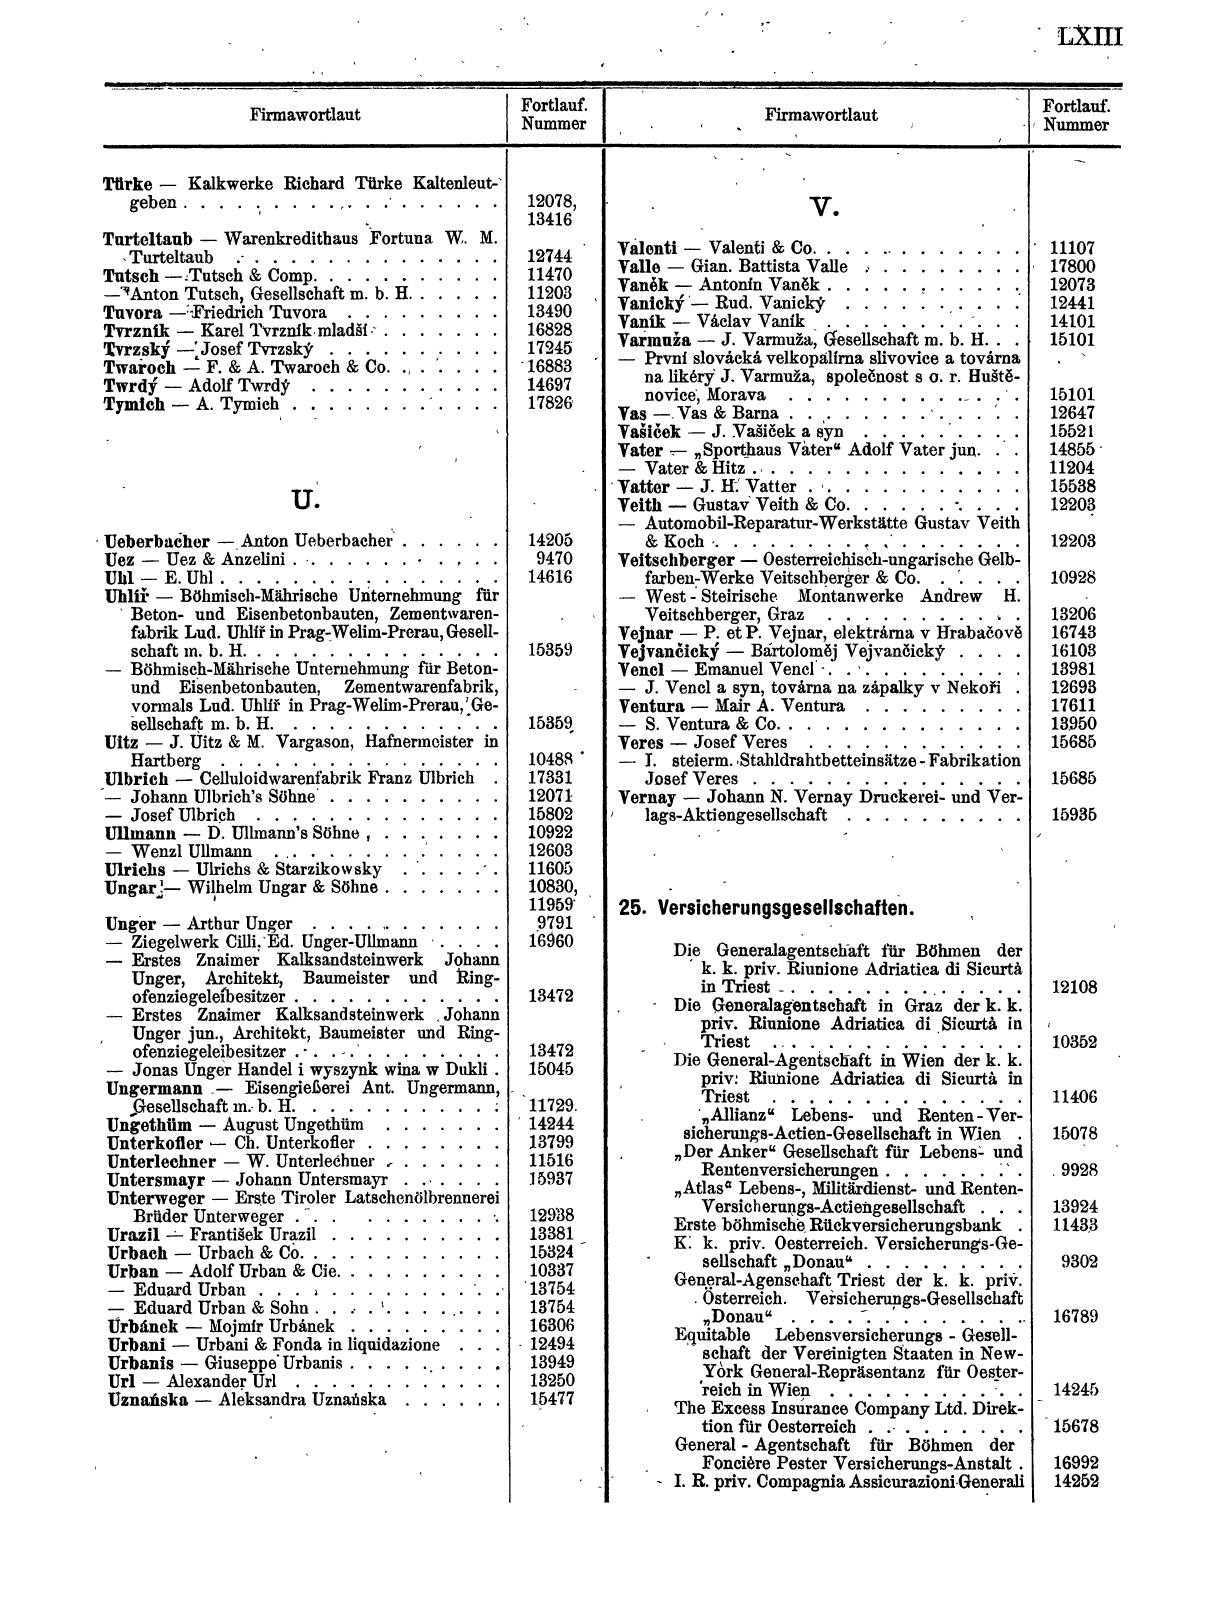 Zentralblatt für die Eintragungen in das Handelsregister 1913, Teil 2 - Seite 67